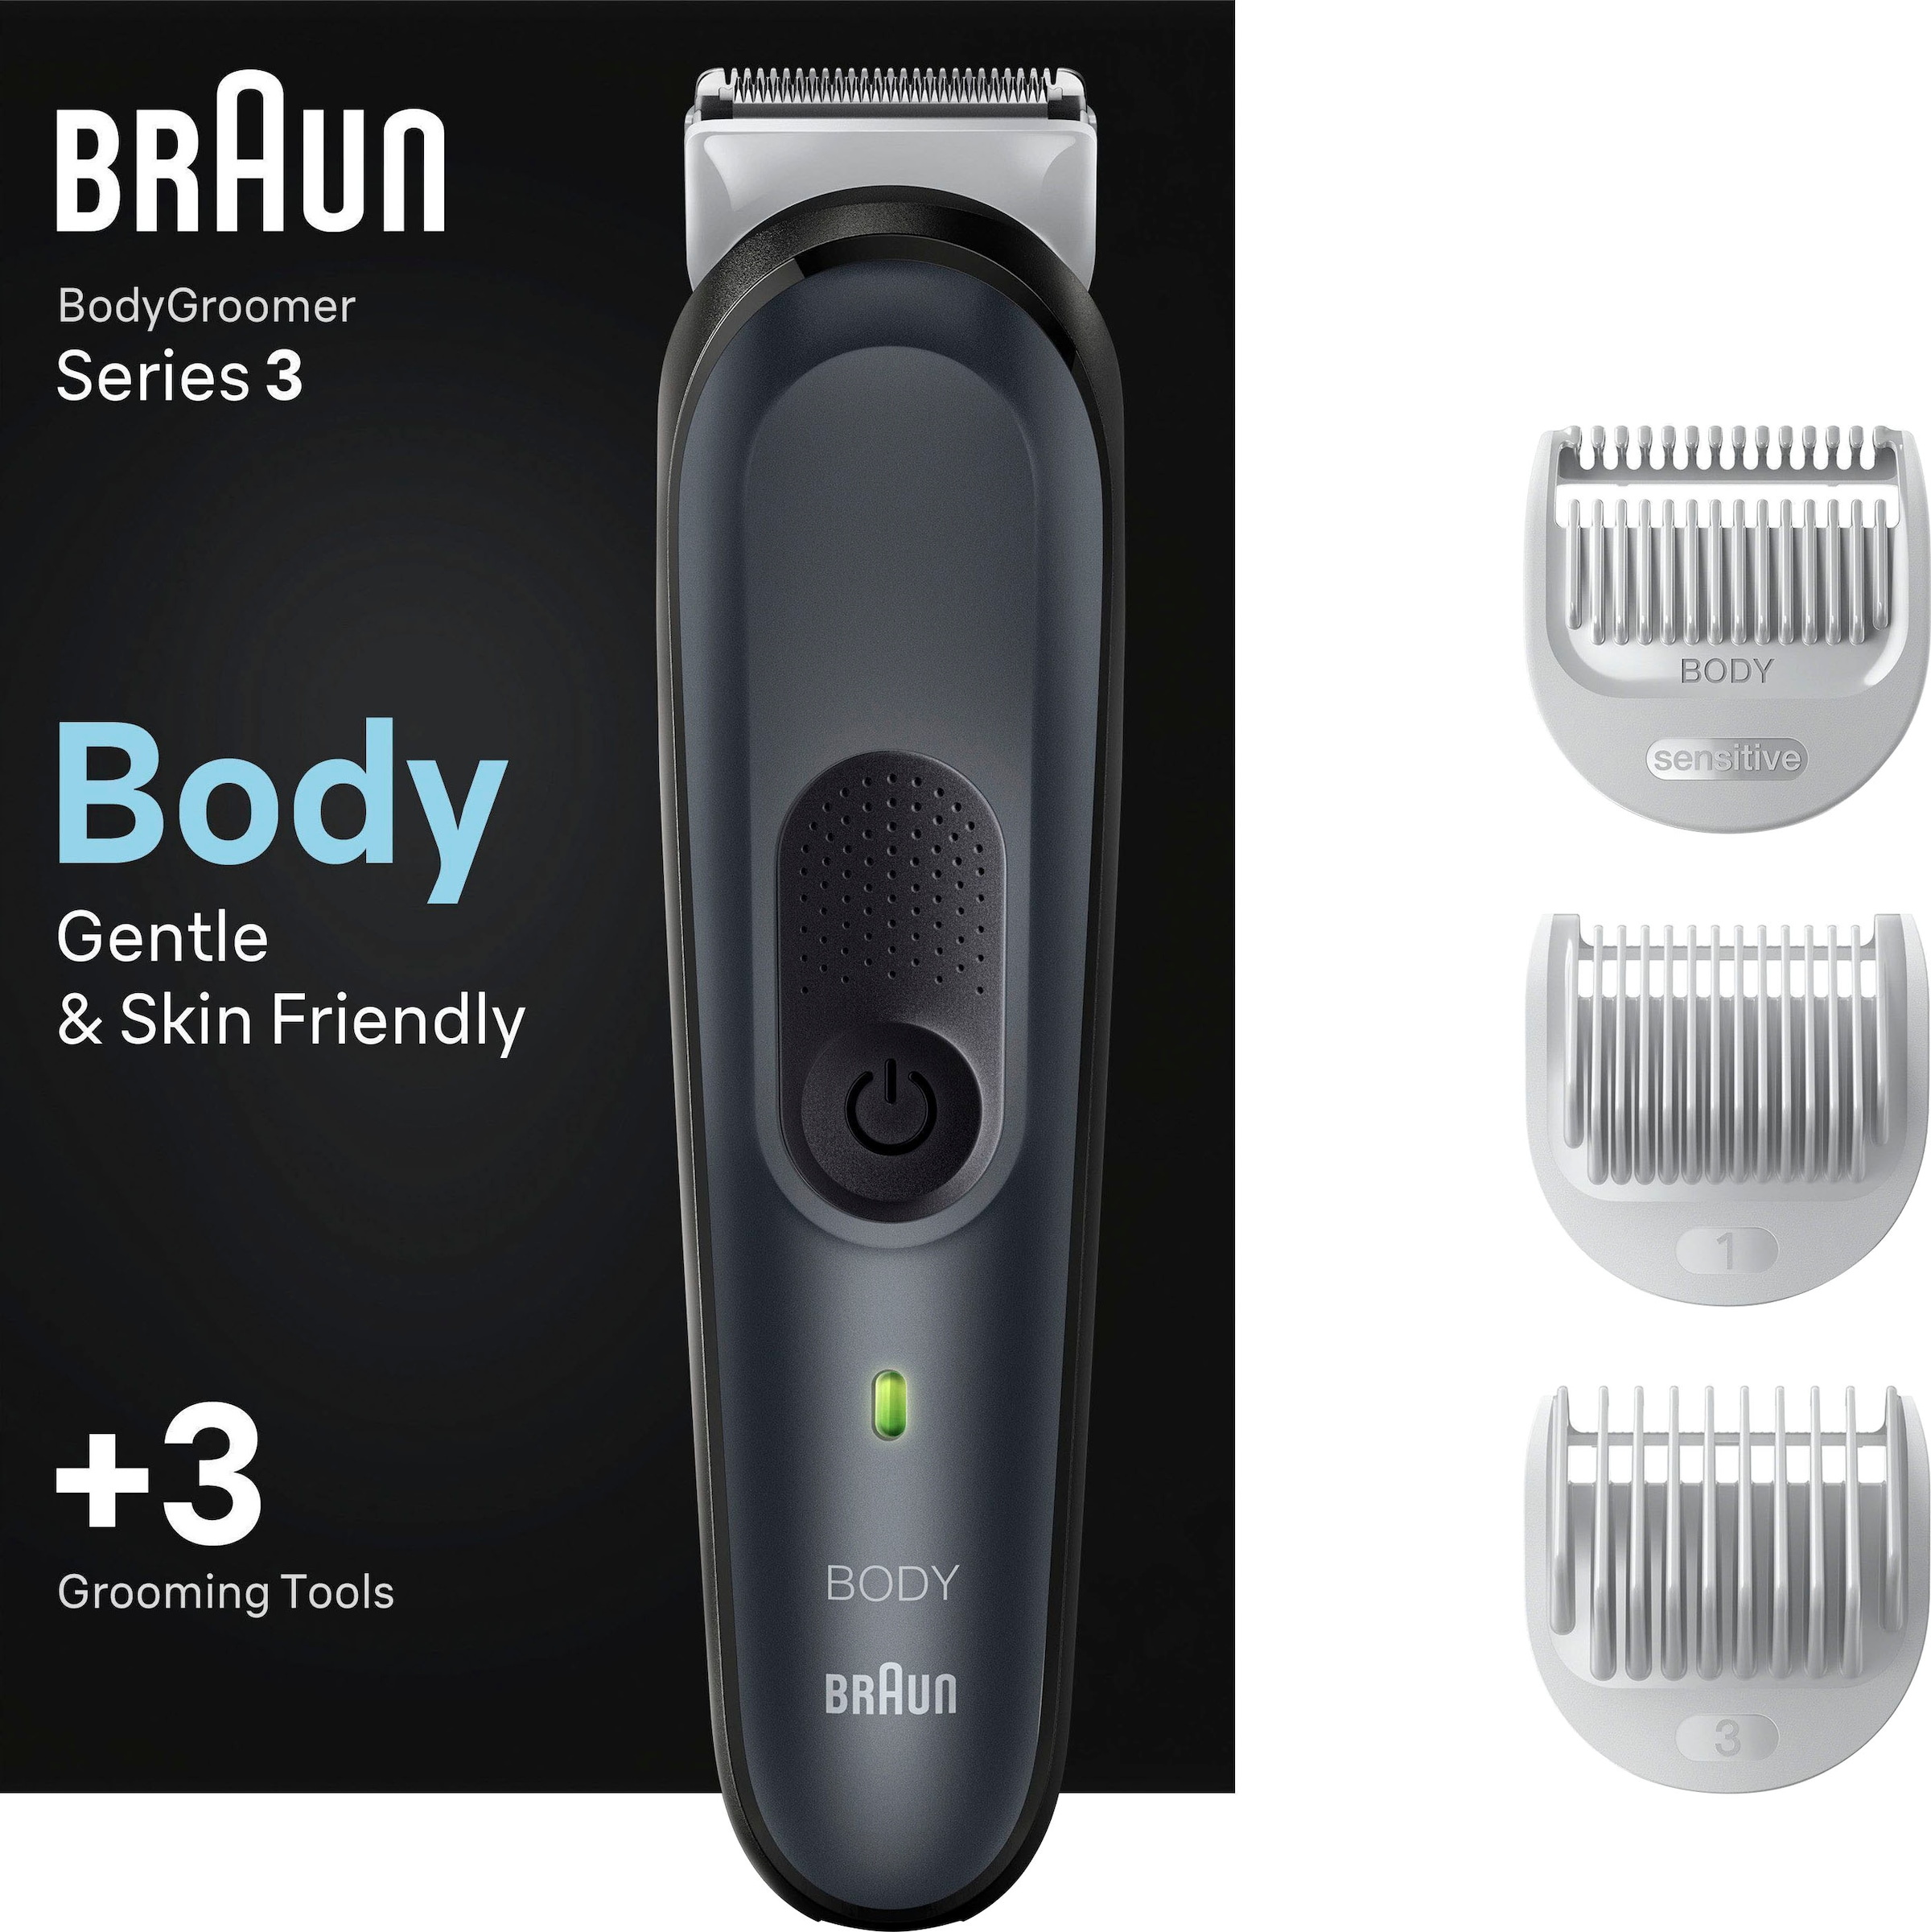 Haarschneider »Bodygroomer BG3340«, 3 Aufsätze, SkinShield-Technologie, Abwaschbar